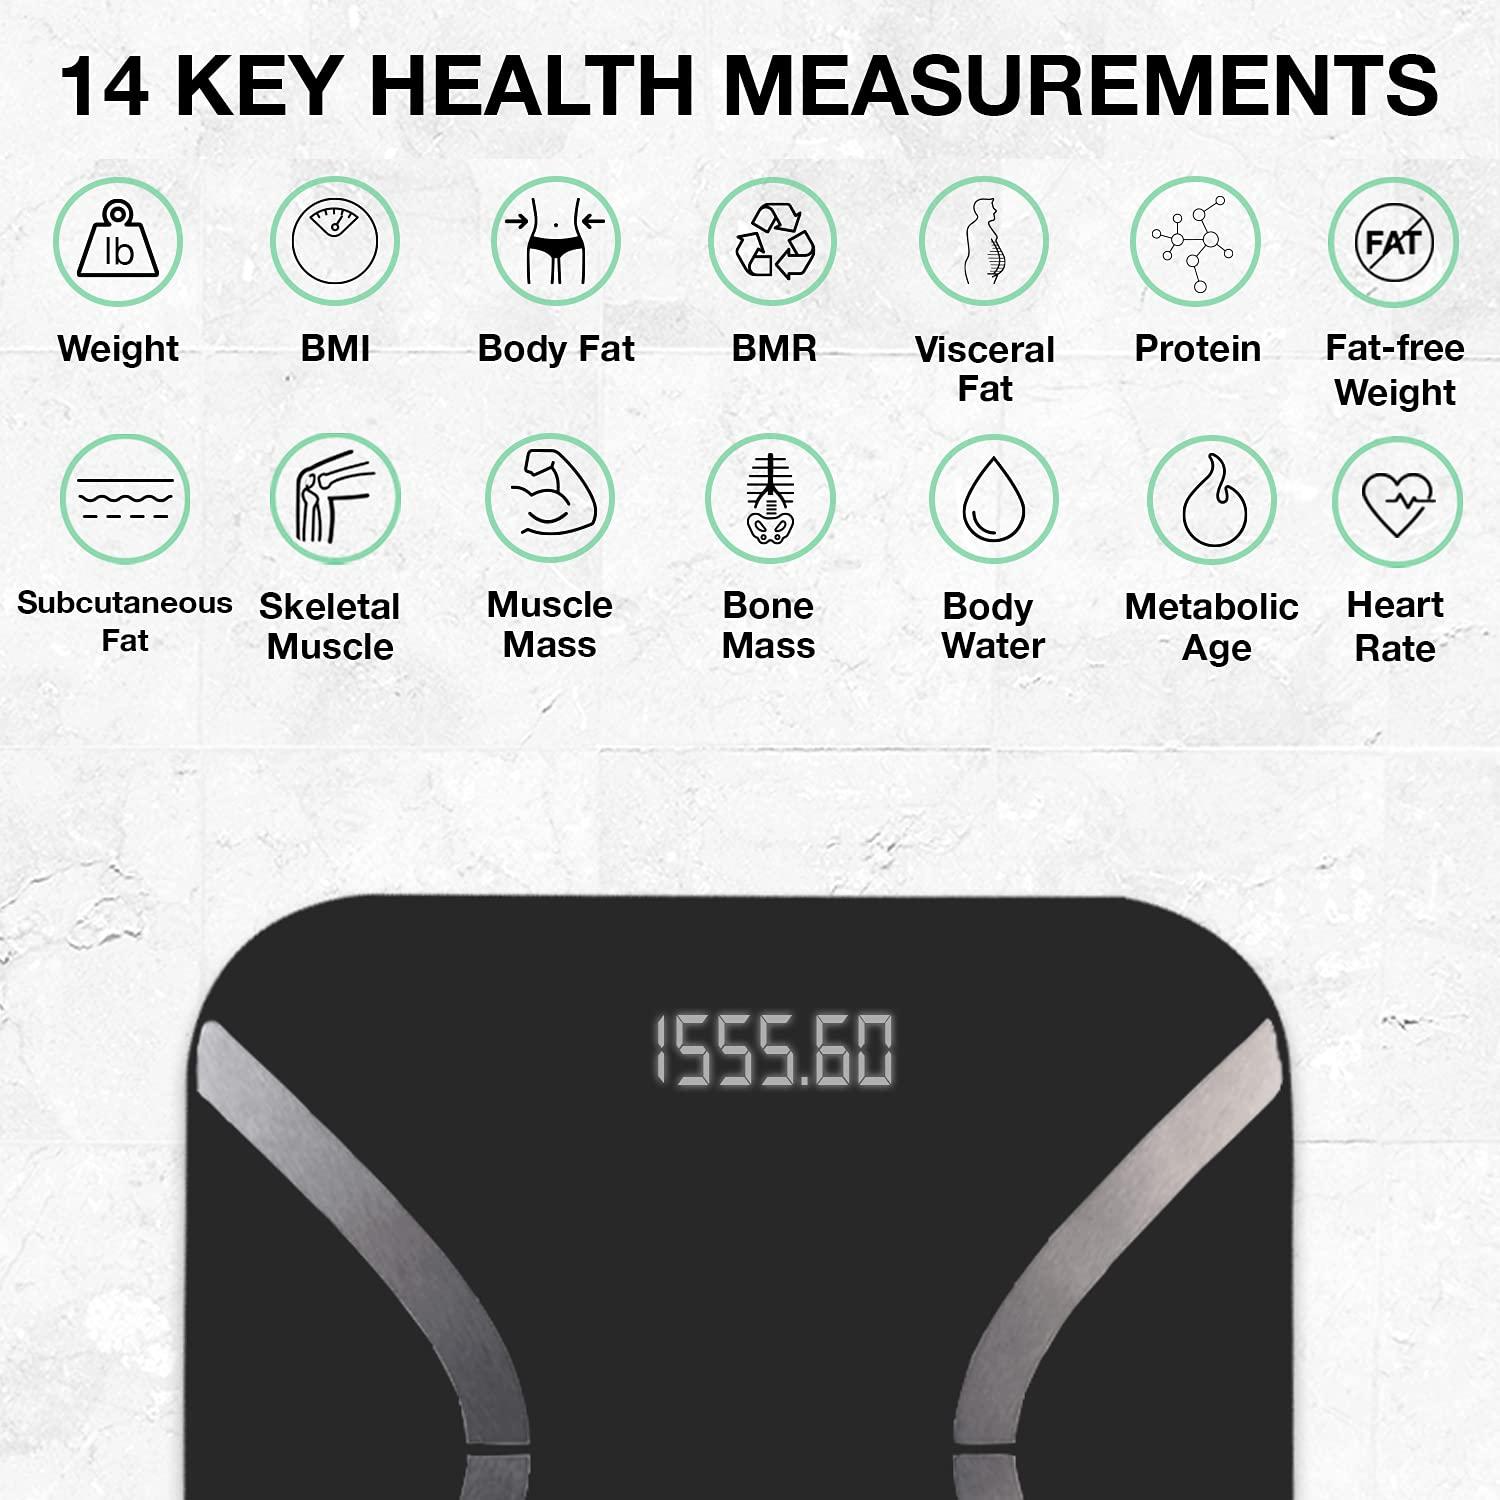 KoreScale Reviews - Is KoreScale Gen2 Smart Biometric Sensor Scale Worth It?